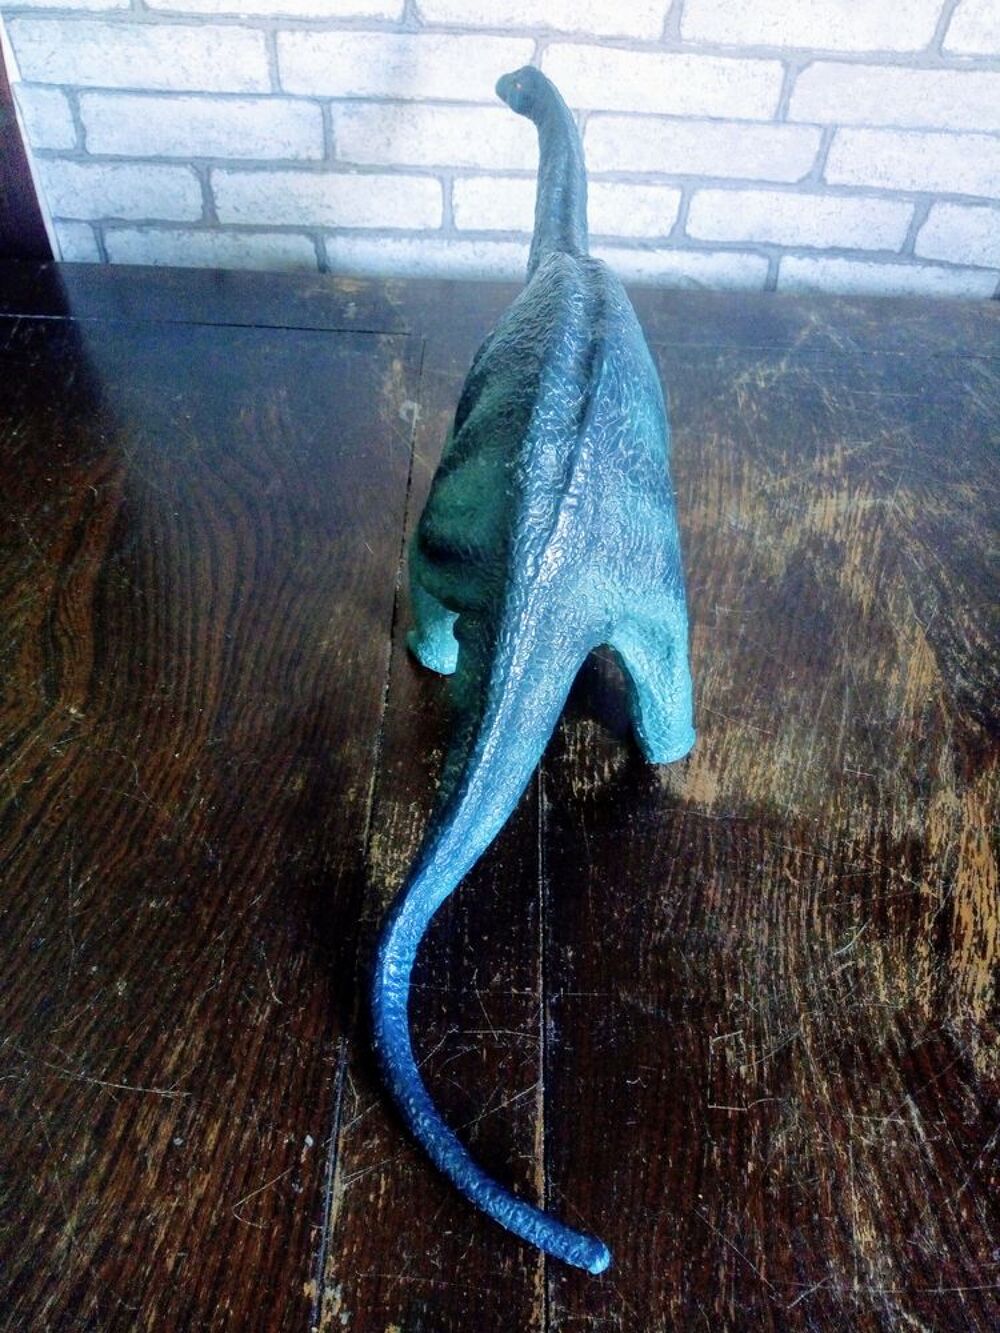 Grande Figurine Dinosaure Apatosaurus 1997 Schleich 16409 Jeux / jouets